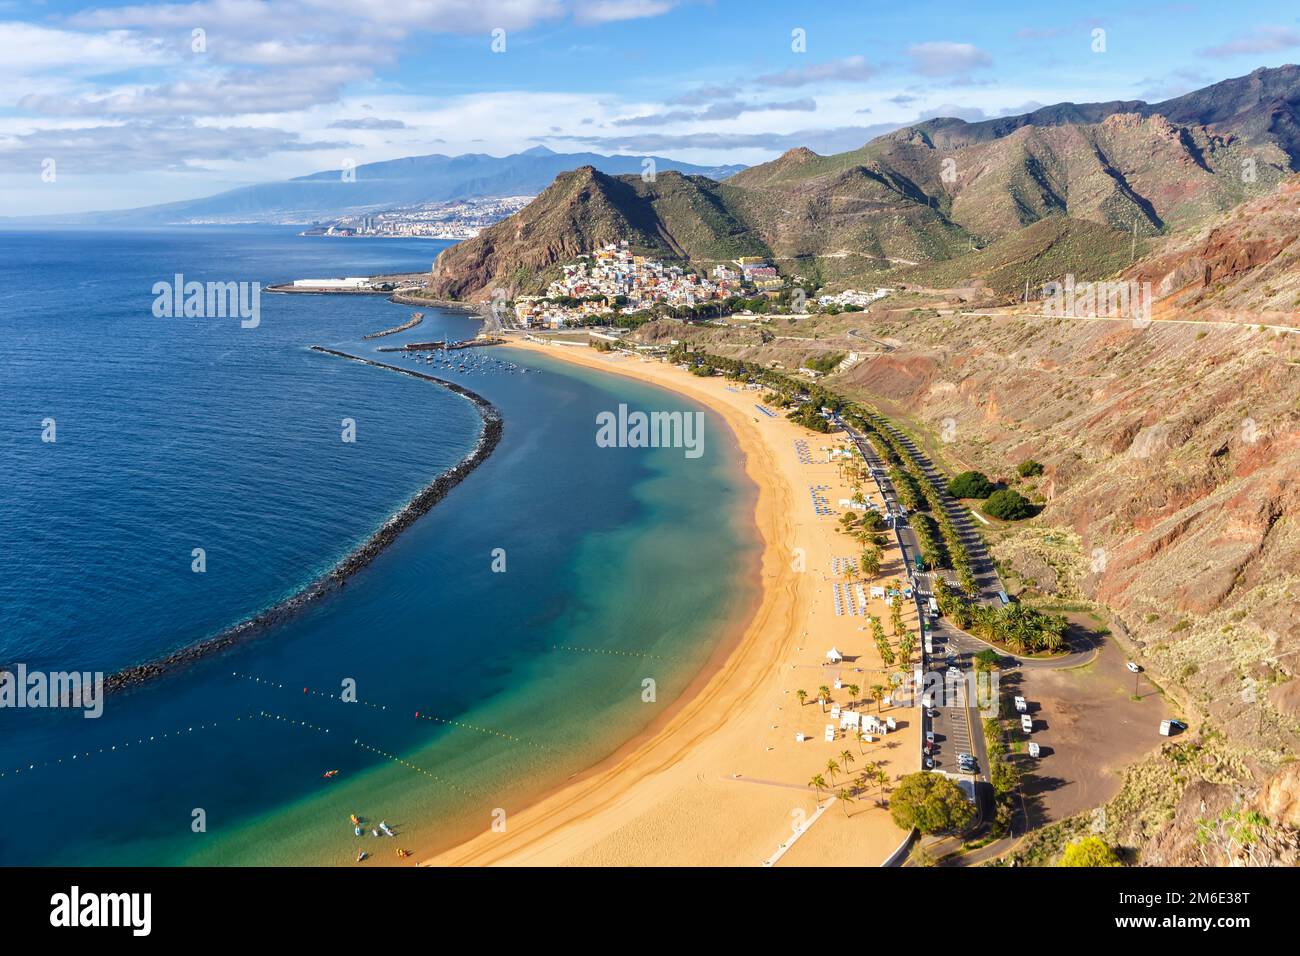 Tenerife plage Teresitas îles Canaries mer eau Espagne voyage Océan Atlantique Banque D'Images